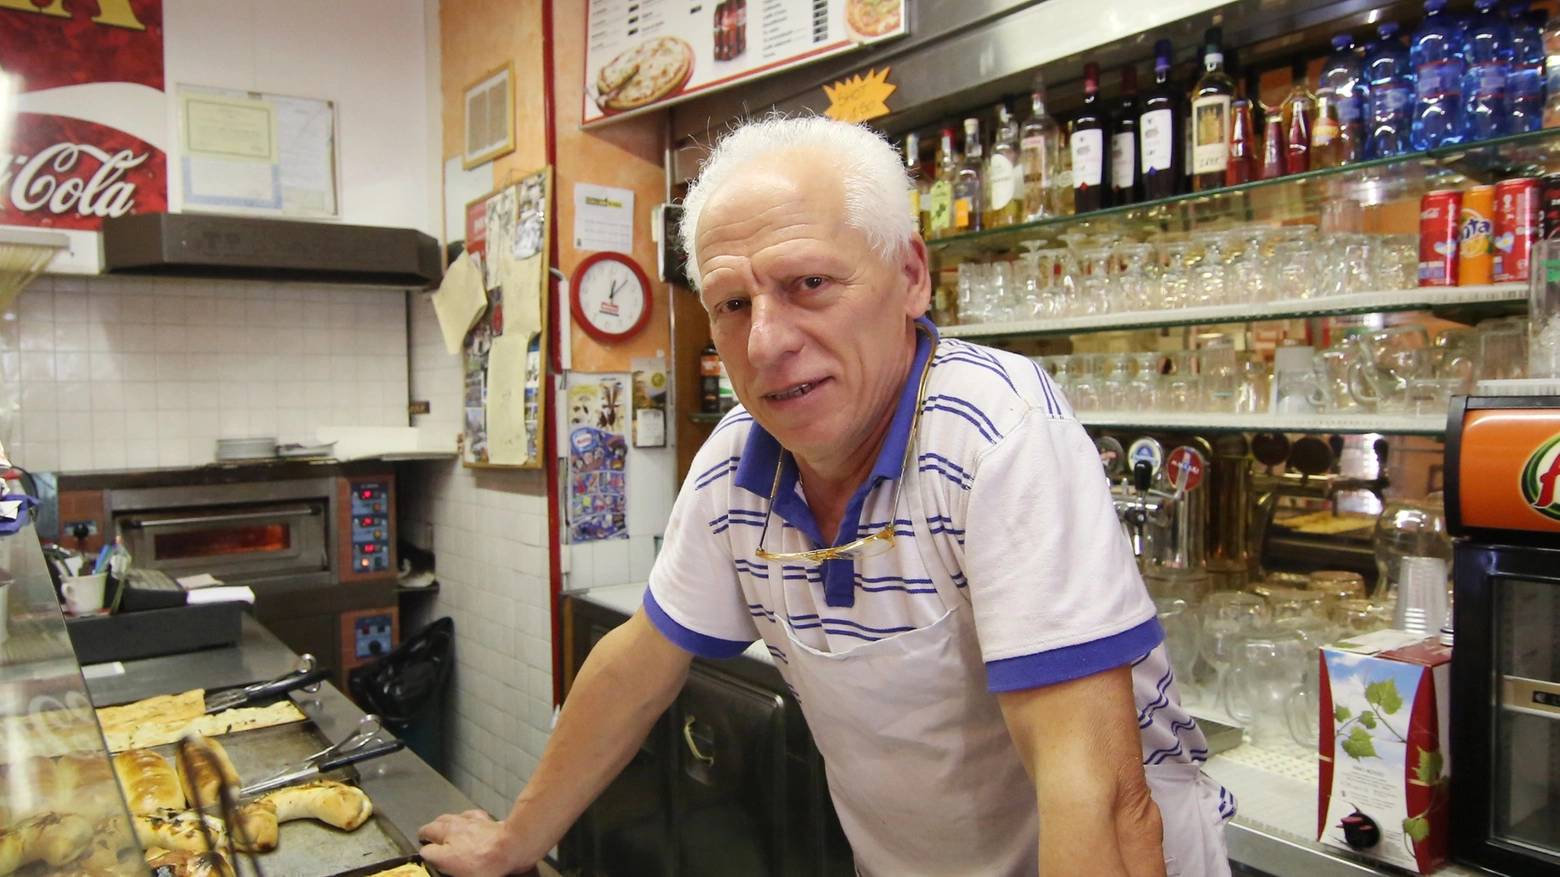 Pietro Orologio chiude la pizzeria Etrusca dopo 40 anni. Ma non perde il suo buonumore (Crocchioni)